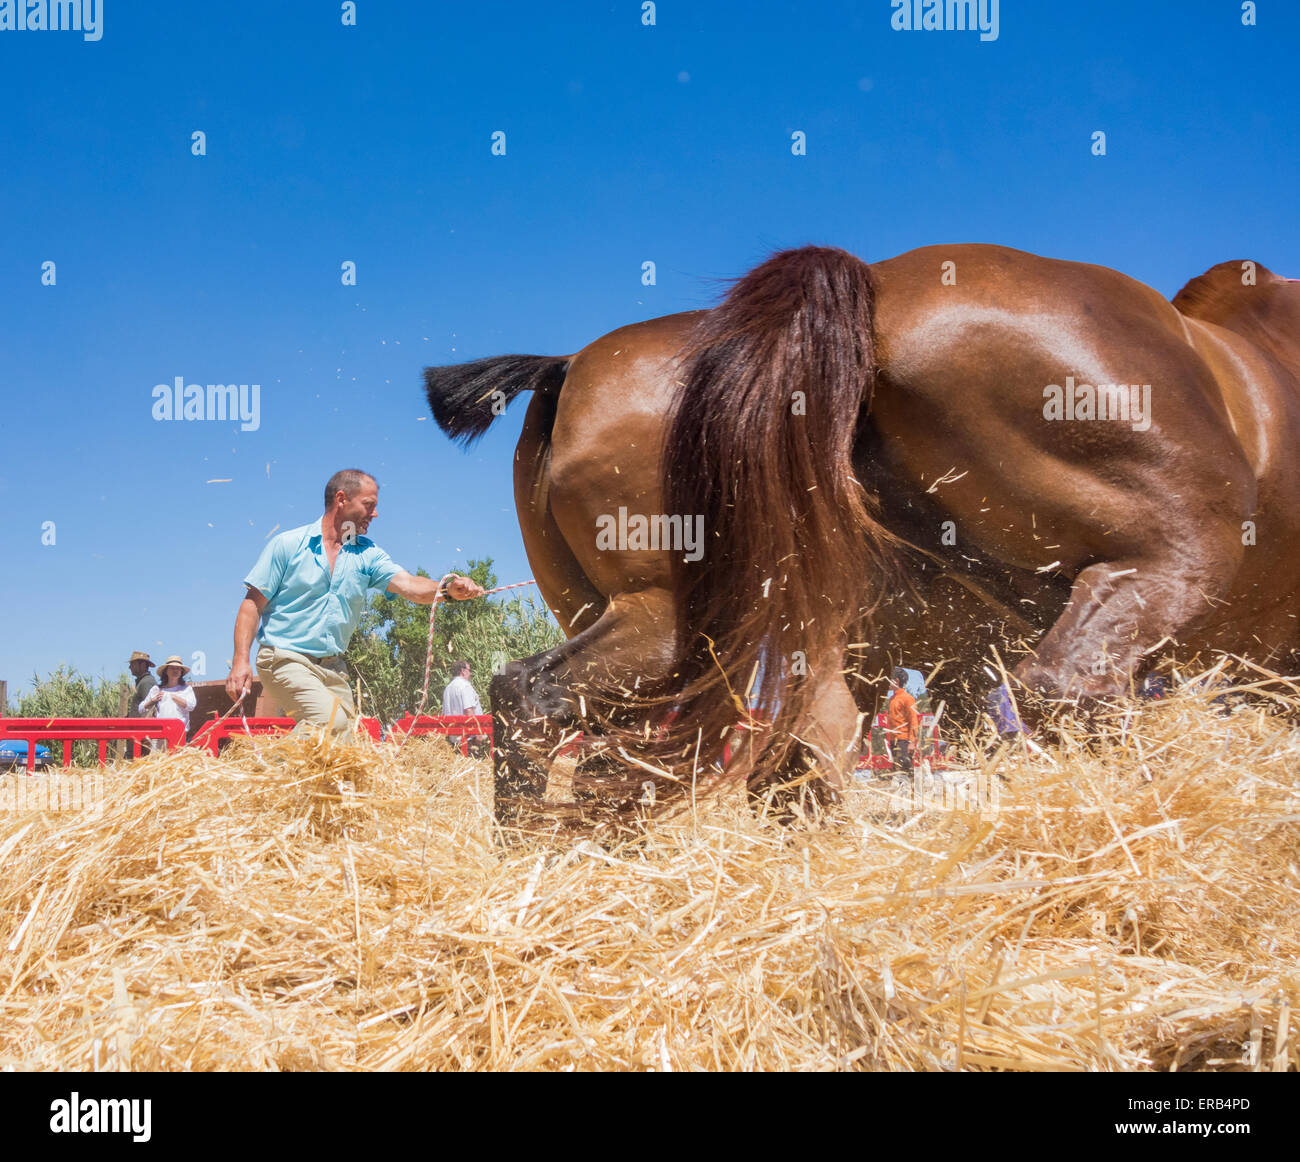 Sabato, 30 maggio 2015, Gran Canaria, Isole Canarie, Spagna. Imprenditore dà una dimostrazione di un metodo tradizionale di trebbiatura di frumento con cavalli a annuale "Fiesta de La lana' (lana festival) su ' Dia de Canarias' Canarian Giornata Nazionale. Credito: ALANDAWSONPHOTOGRAPHY/Alamy Live News Foto Stock